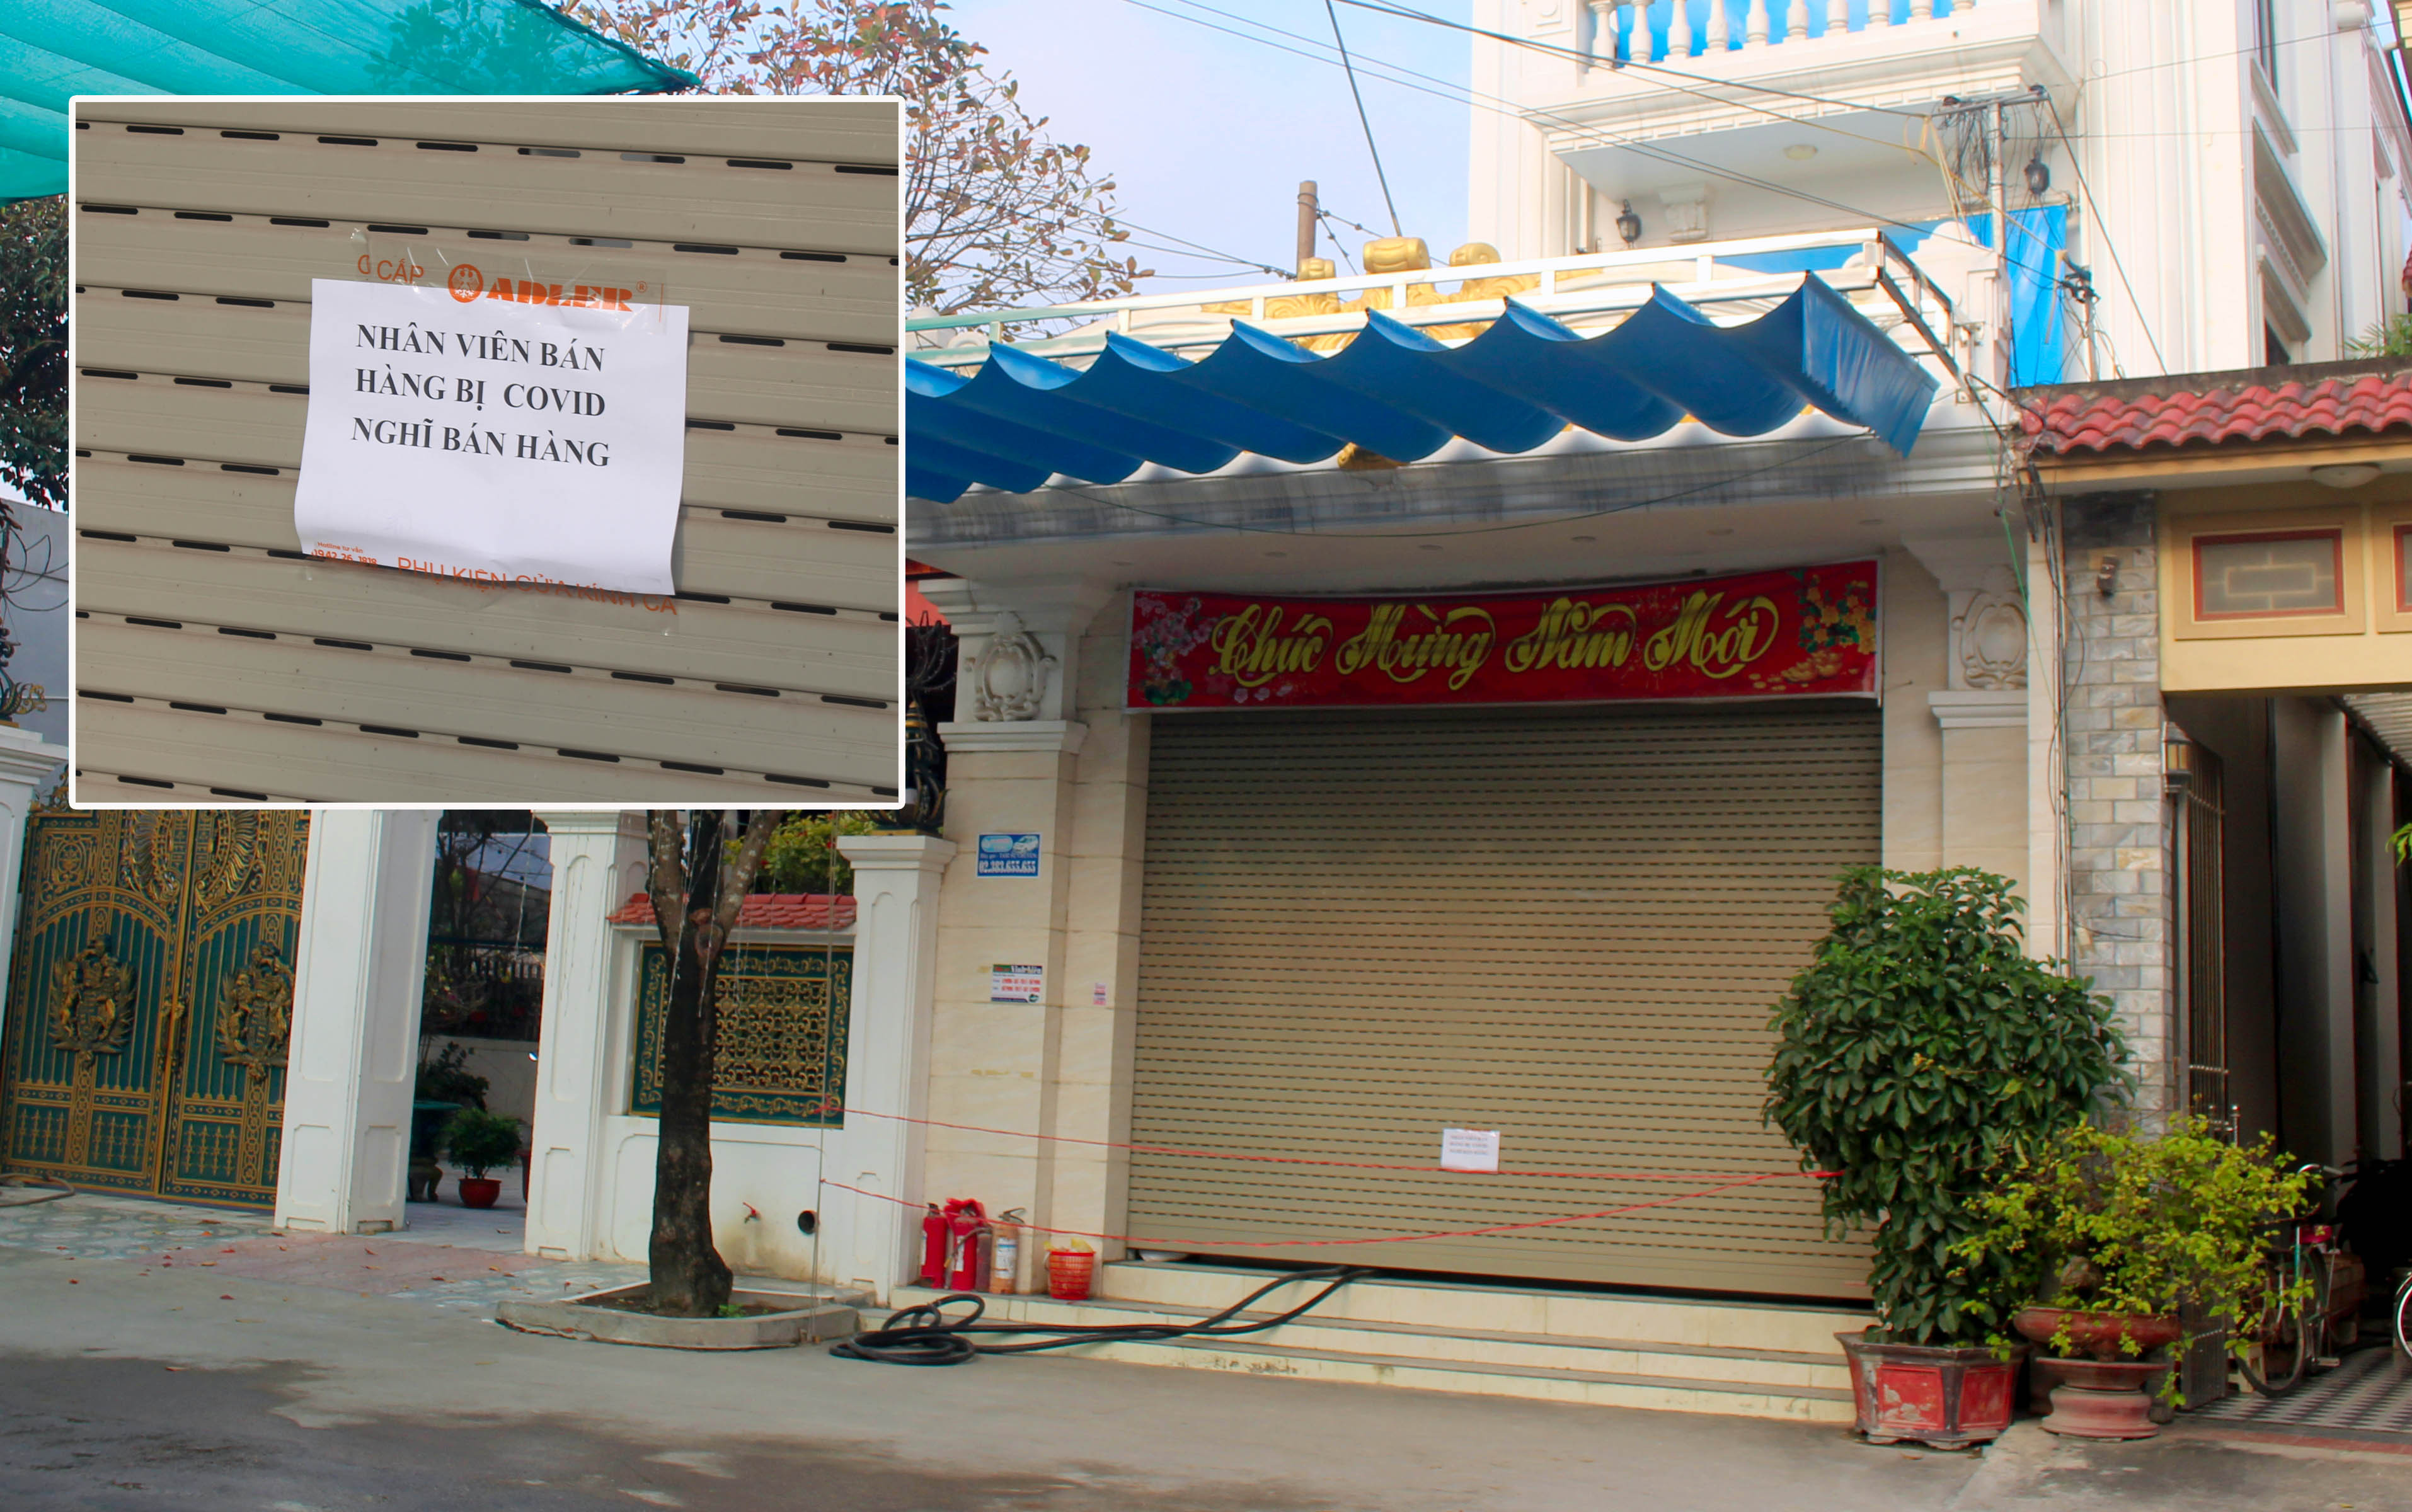 Cây xăng trên địa bàn xã Quỳnh Lương, huyện Quỳnh Lưu đóng cửa, nghỉ bán hàng trong sáng 11/3. Ảnh: P.V